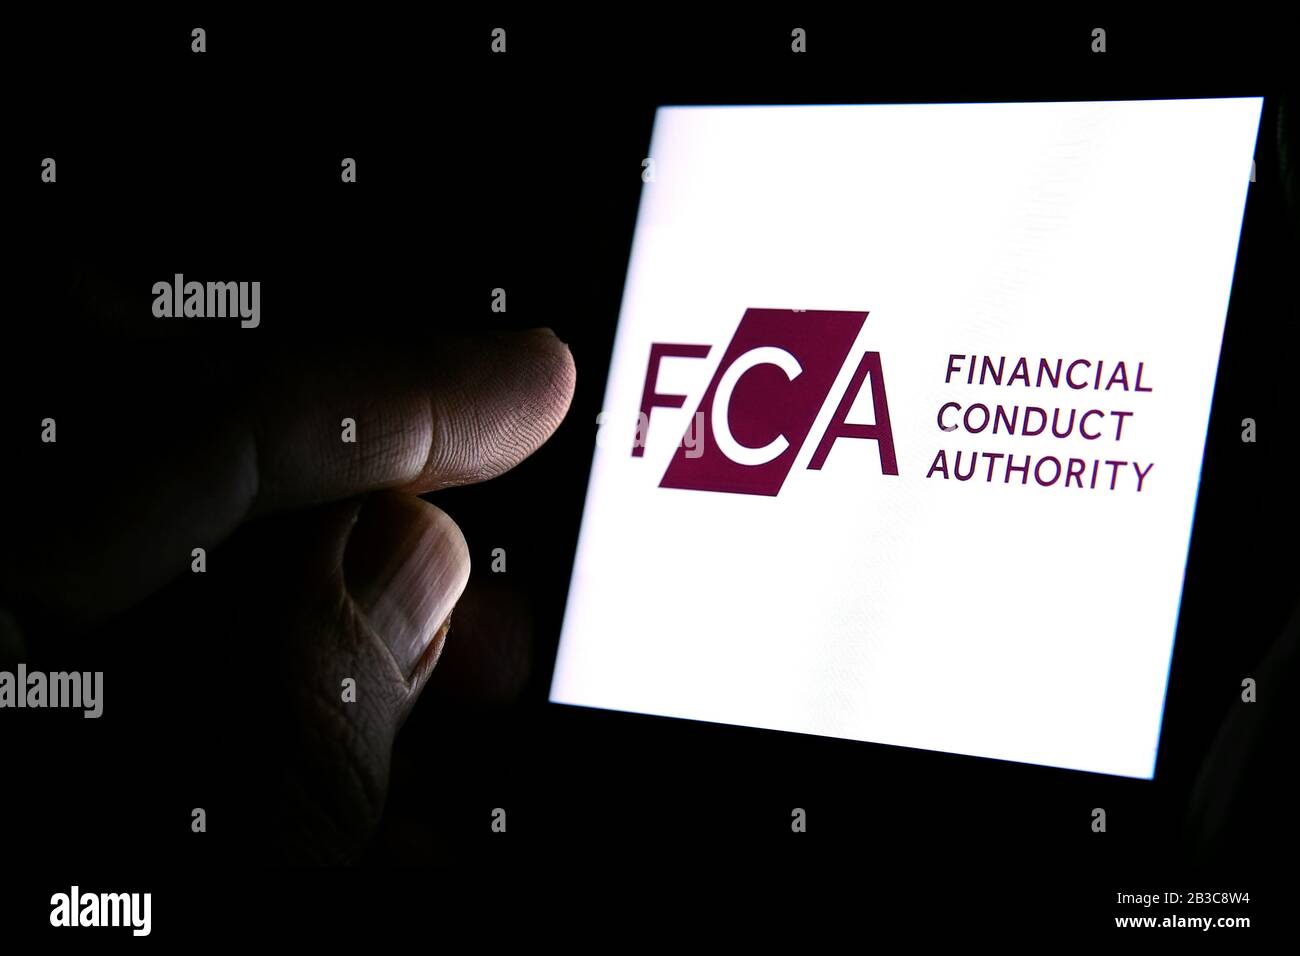 Logotipo de FCA Financial Conduct Authority en el smartphone y dedo apuntando a él en la habitación oscura. Concepto. FCA es un organismo regulador financiero en el Reino Unido Foto de stock